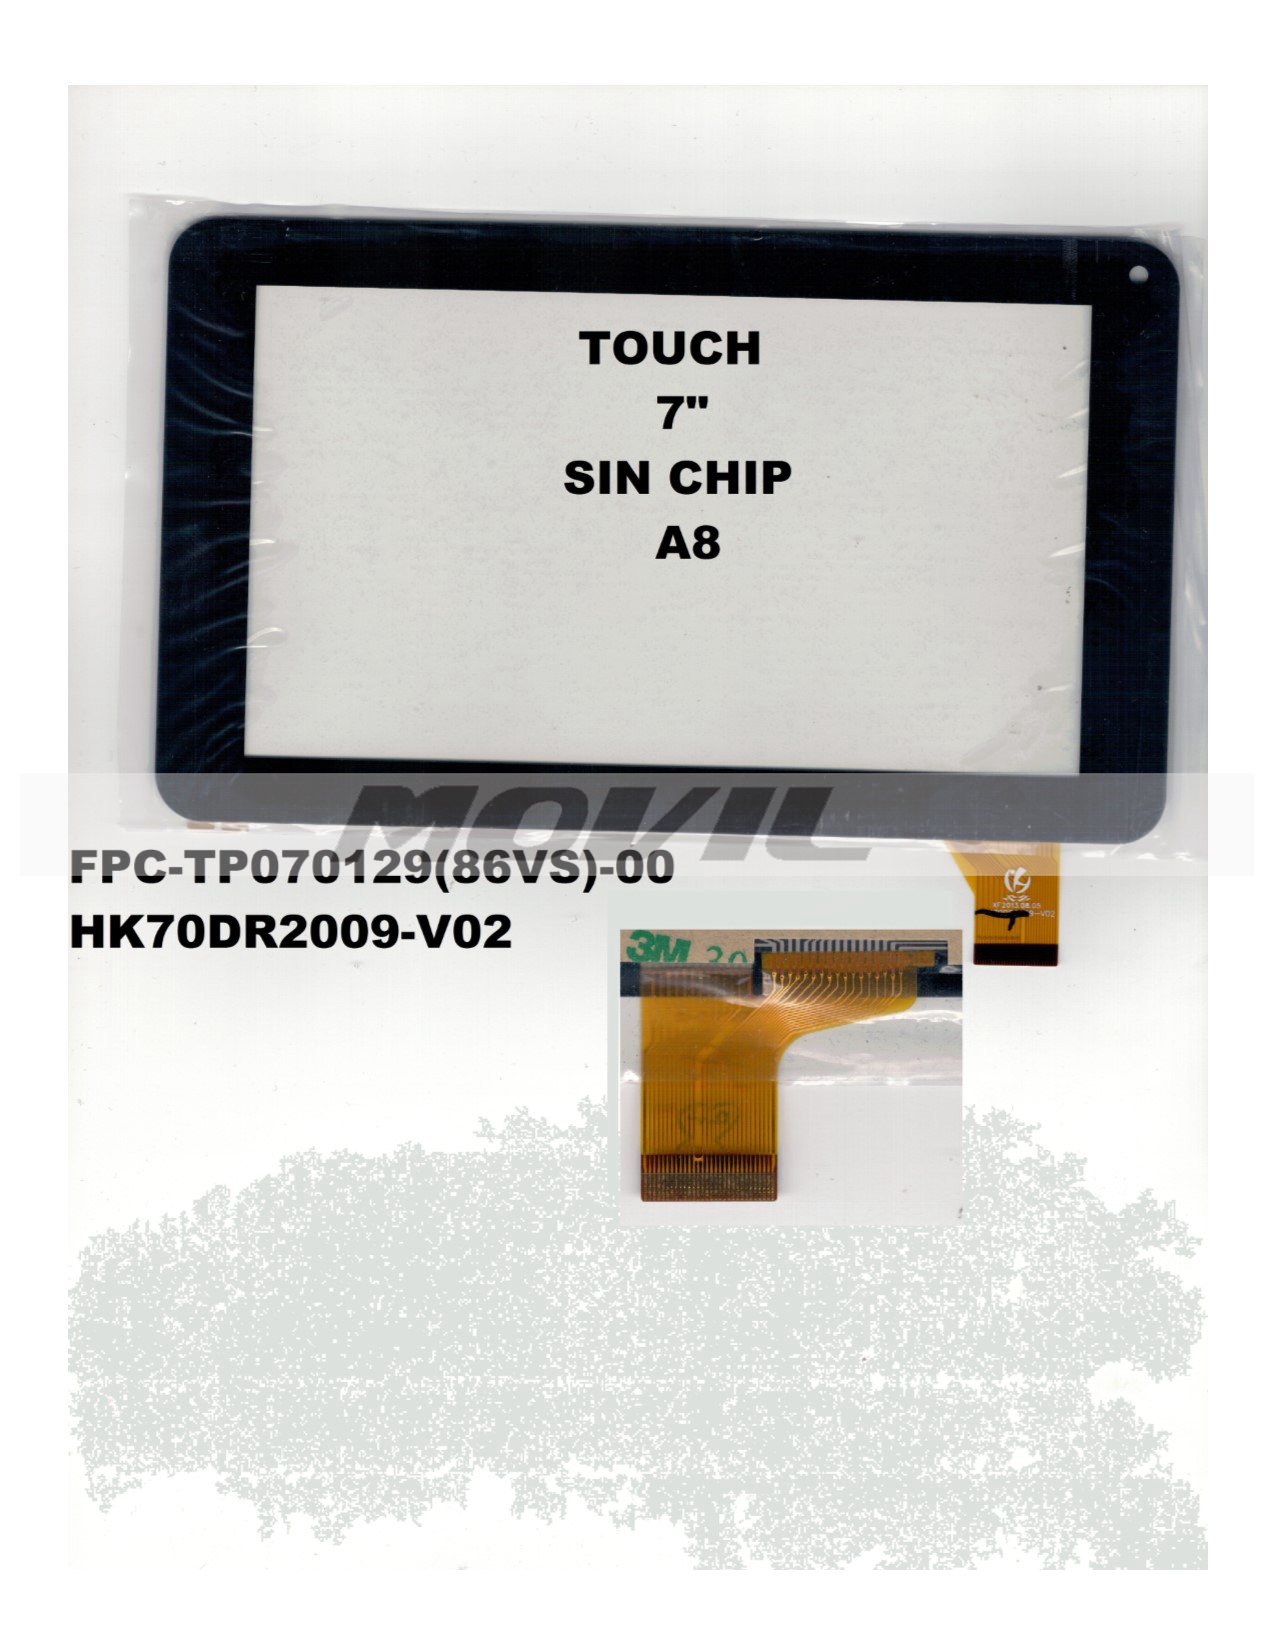 Touch tactil para tablet flex 7 inch SIN CHIP A8 FPC-TP070129(86VS)-00 HK70DR2009-V02